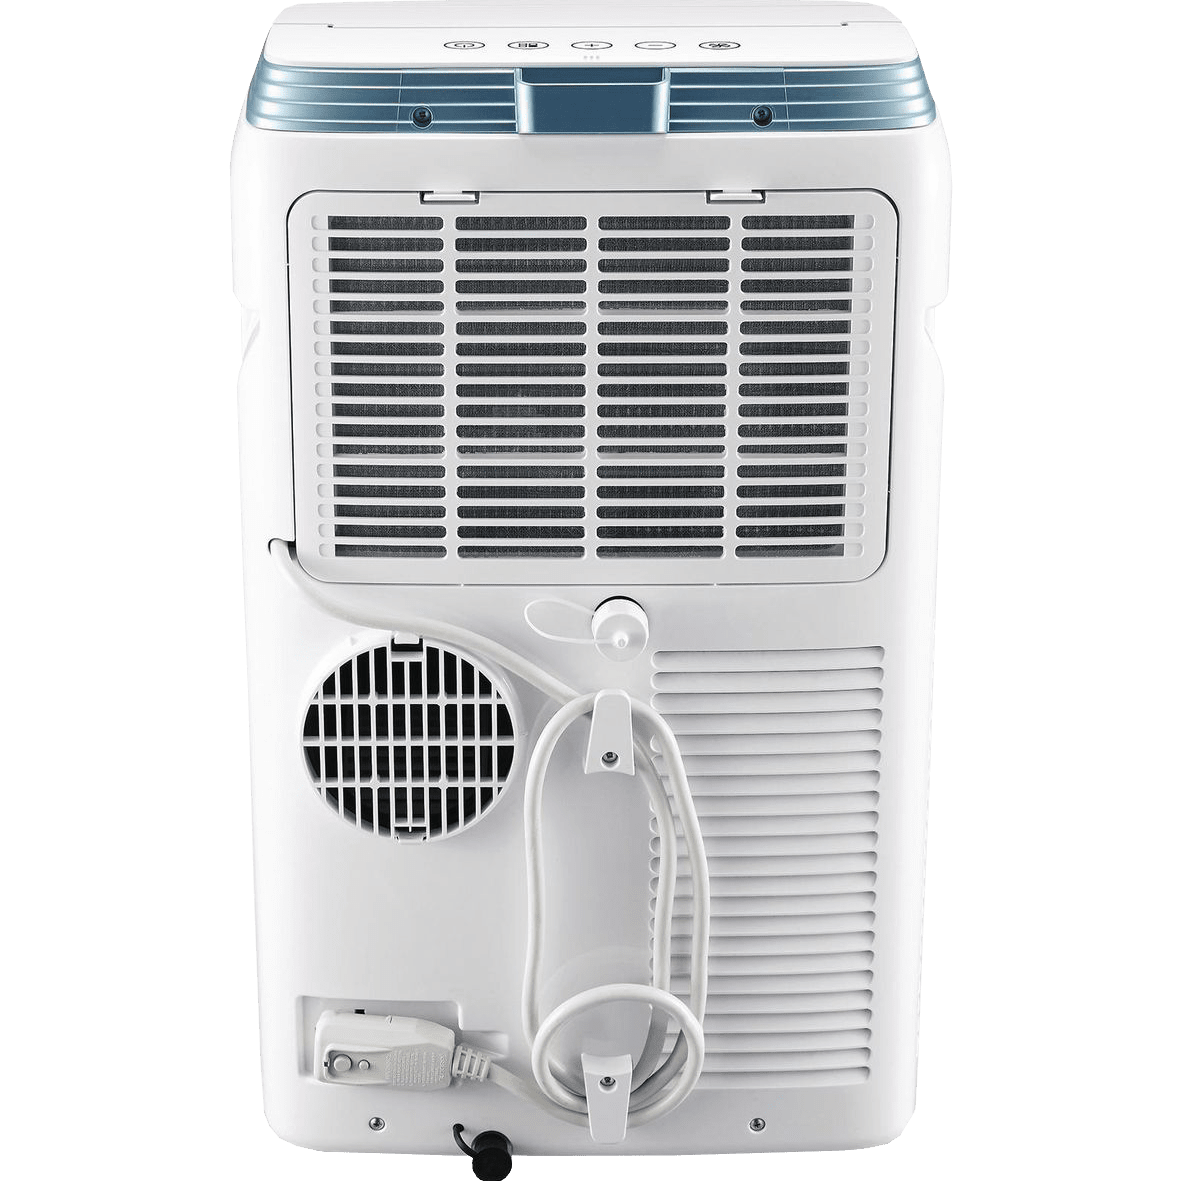 danby portable air conditioner